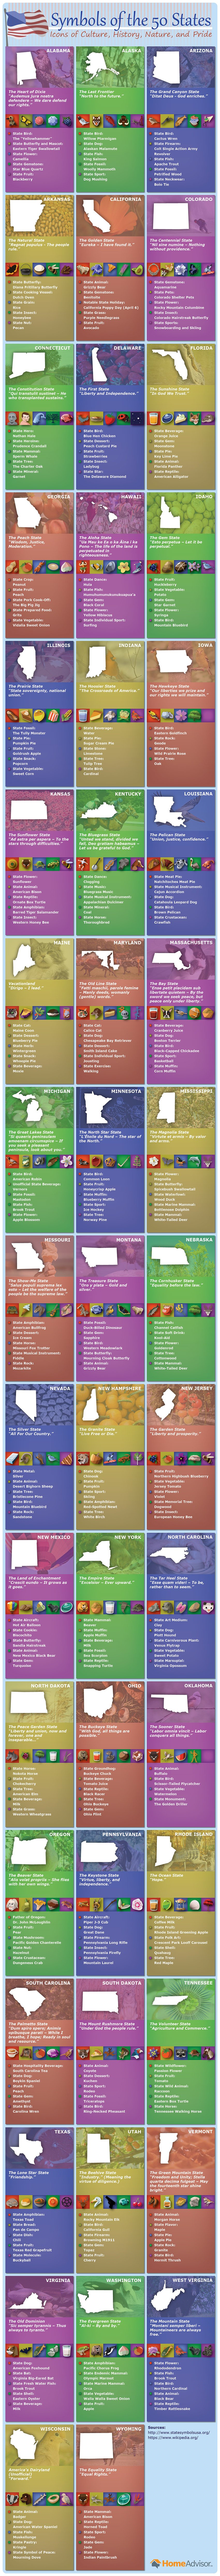 50 States Symbols & Icons - HomeAdvisor.com - Infographic